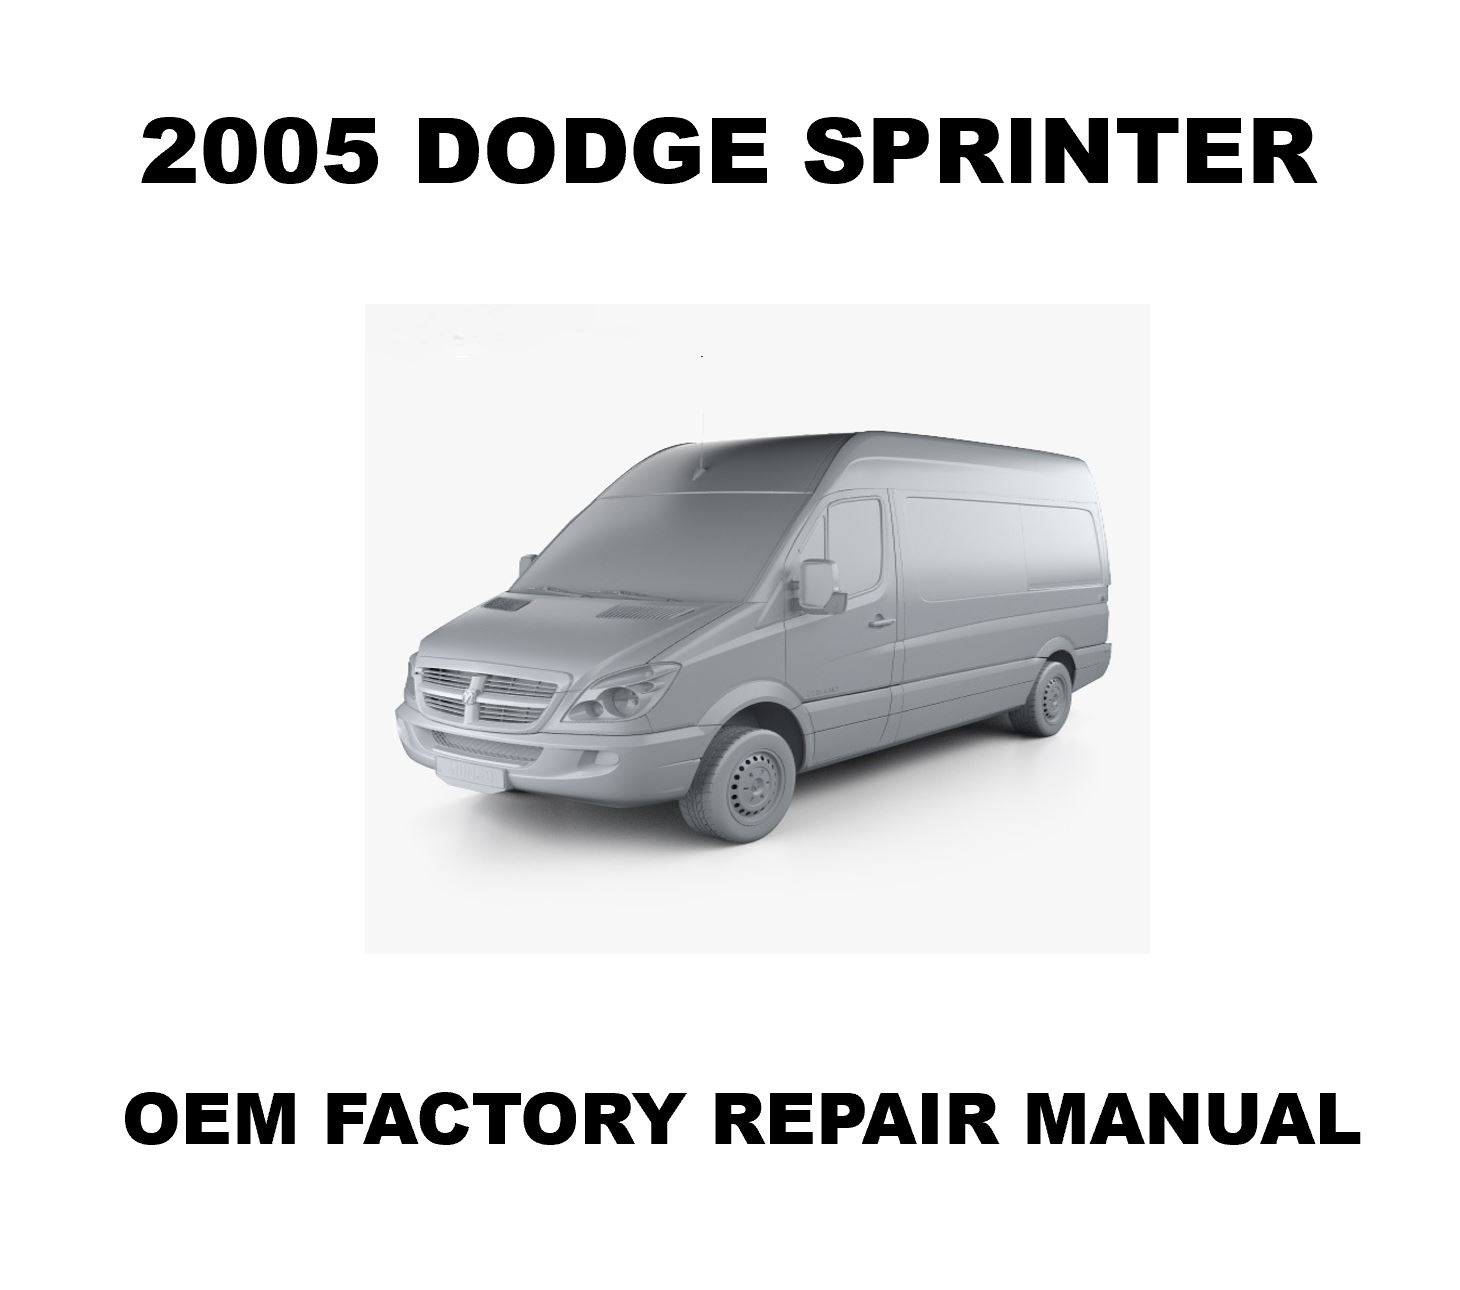 2005_dodge_sprinter_repair_manual_1460